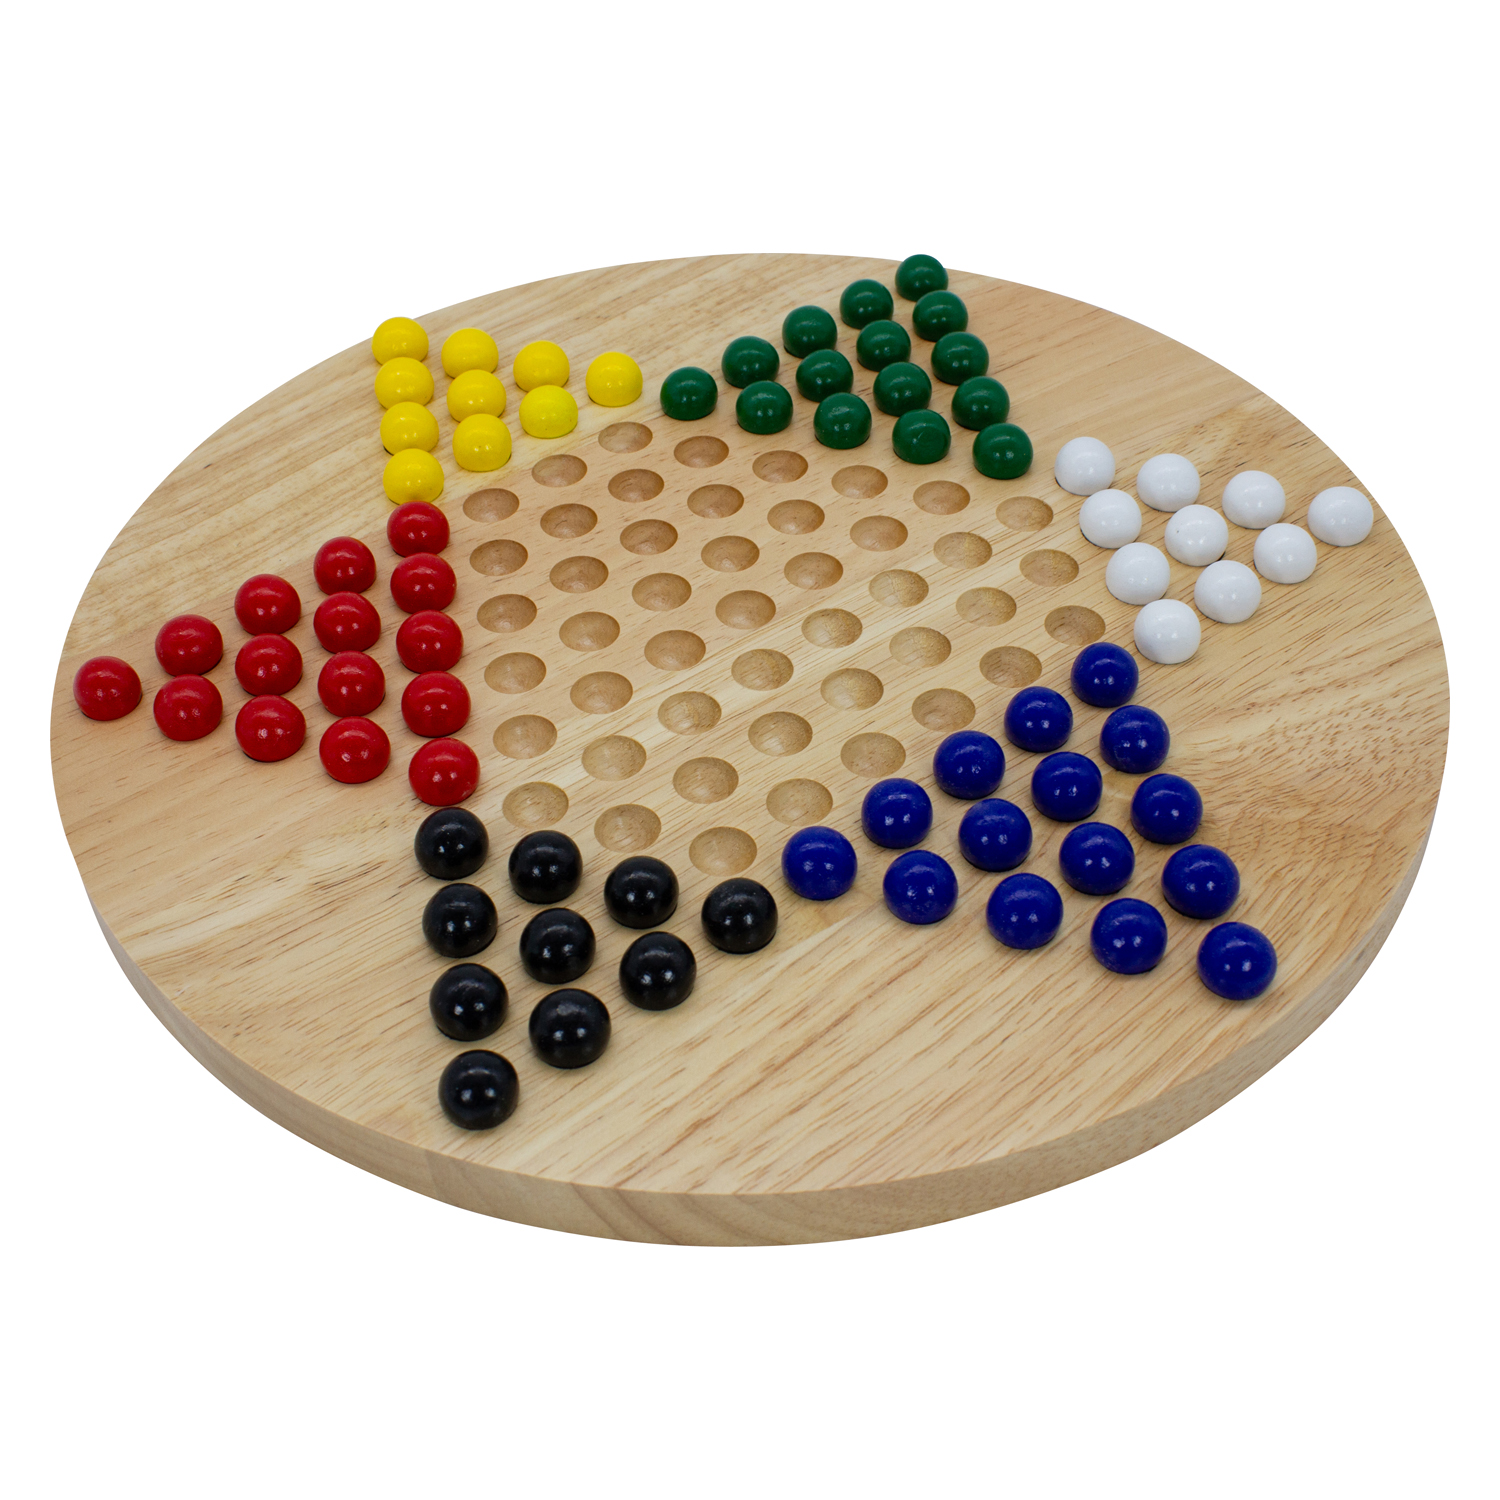 GICO Holz Halma Spiel XL - das Brettspiel für die ganze Familie, stabile Ausführung. Bekanntes Gesellschaftsspiel Spiel für Jung und Alt -7960